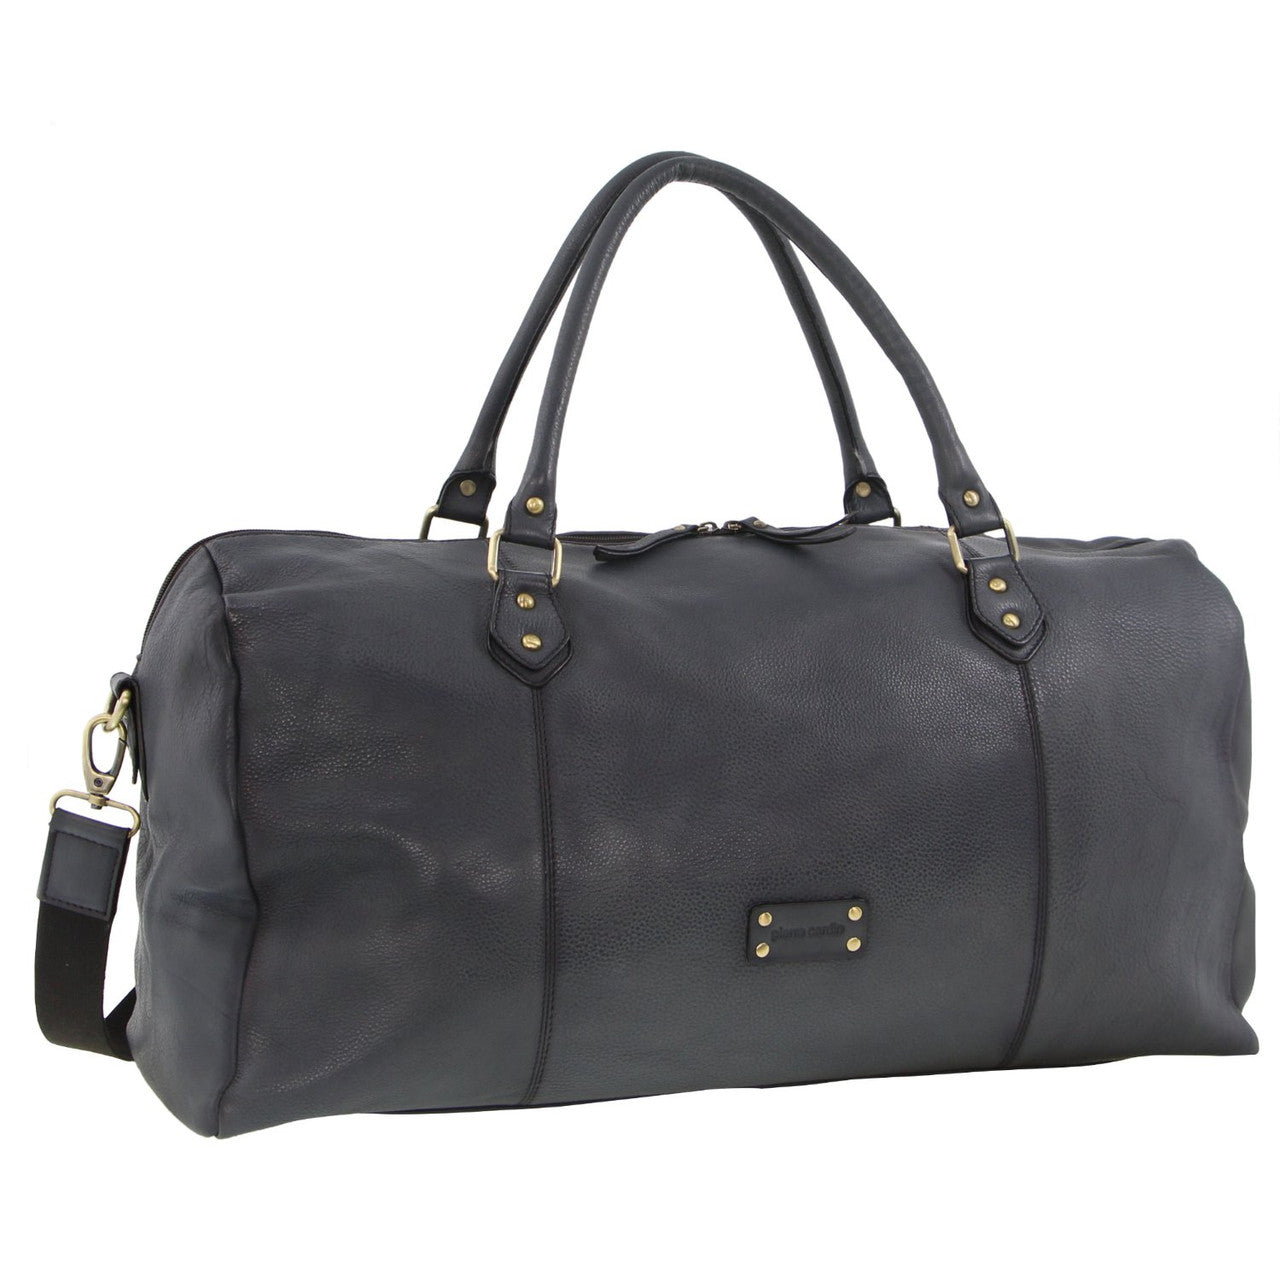 Pierre Cardin - 56cm Leather overnight bag PC3335 - Black-1